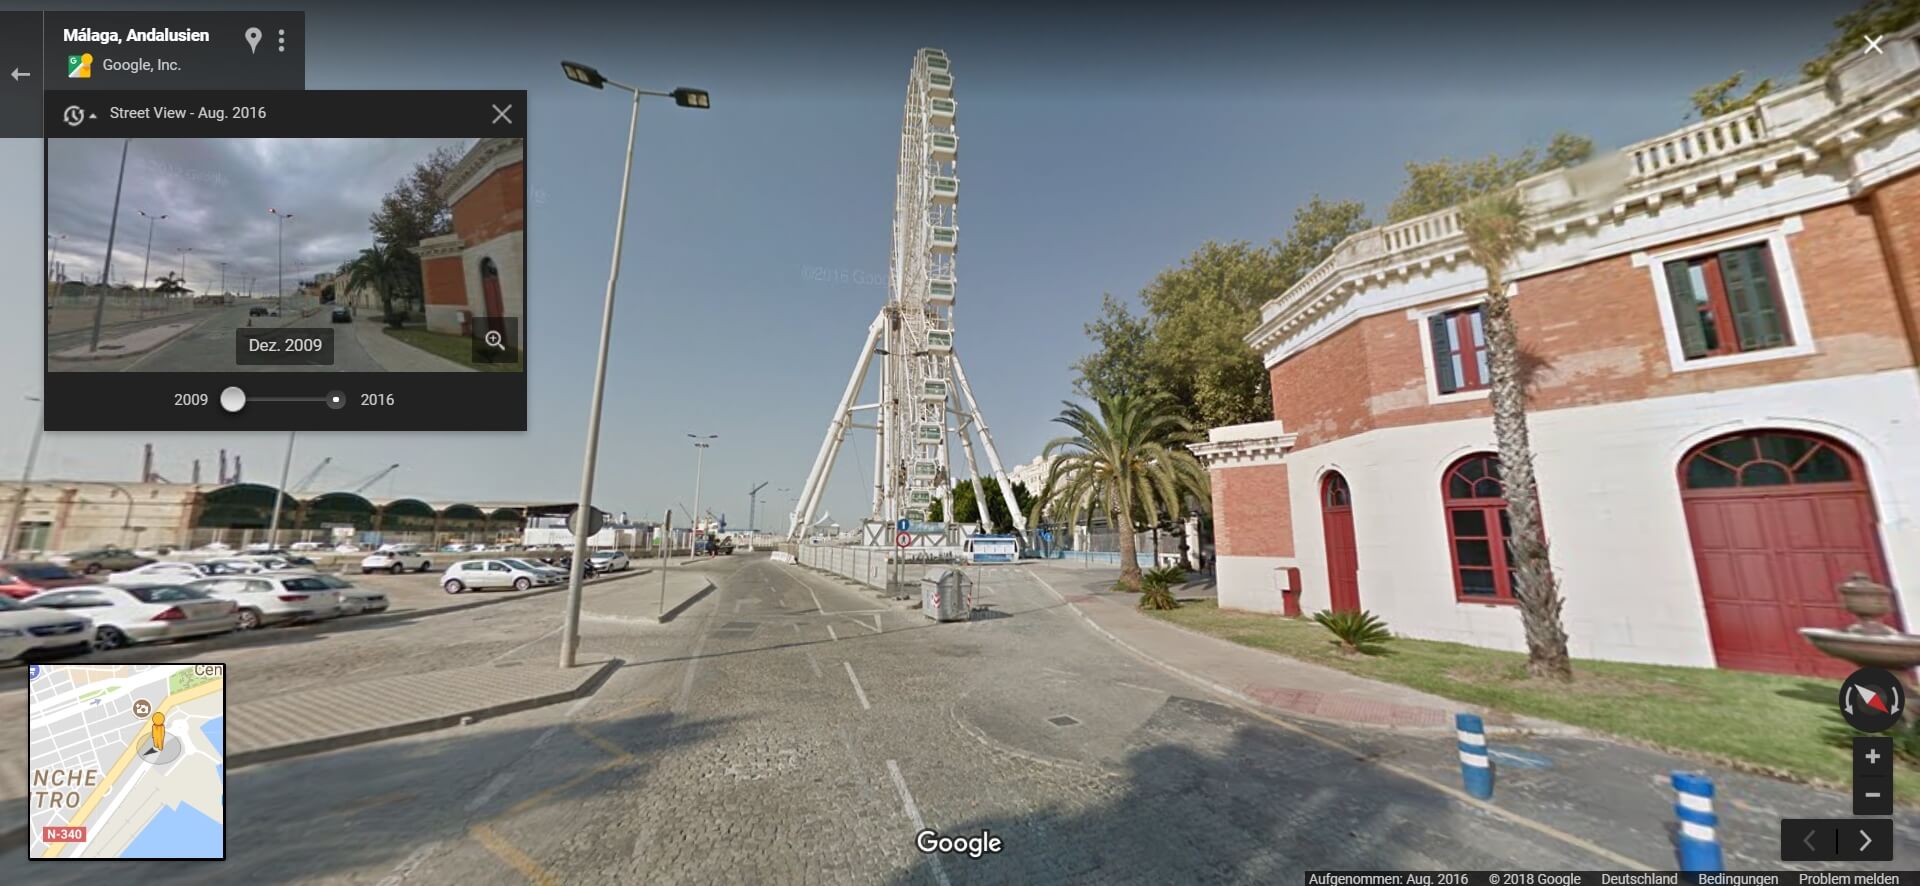 Ansicht Google-Streetview einer Straße am Hafen von Malaga mit Auswahl von Bild-Ansichten aus verschiedenen Zeiten